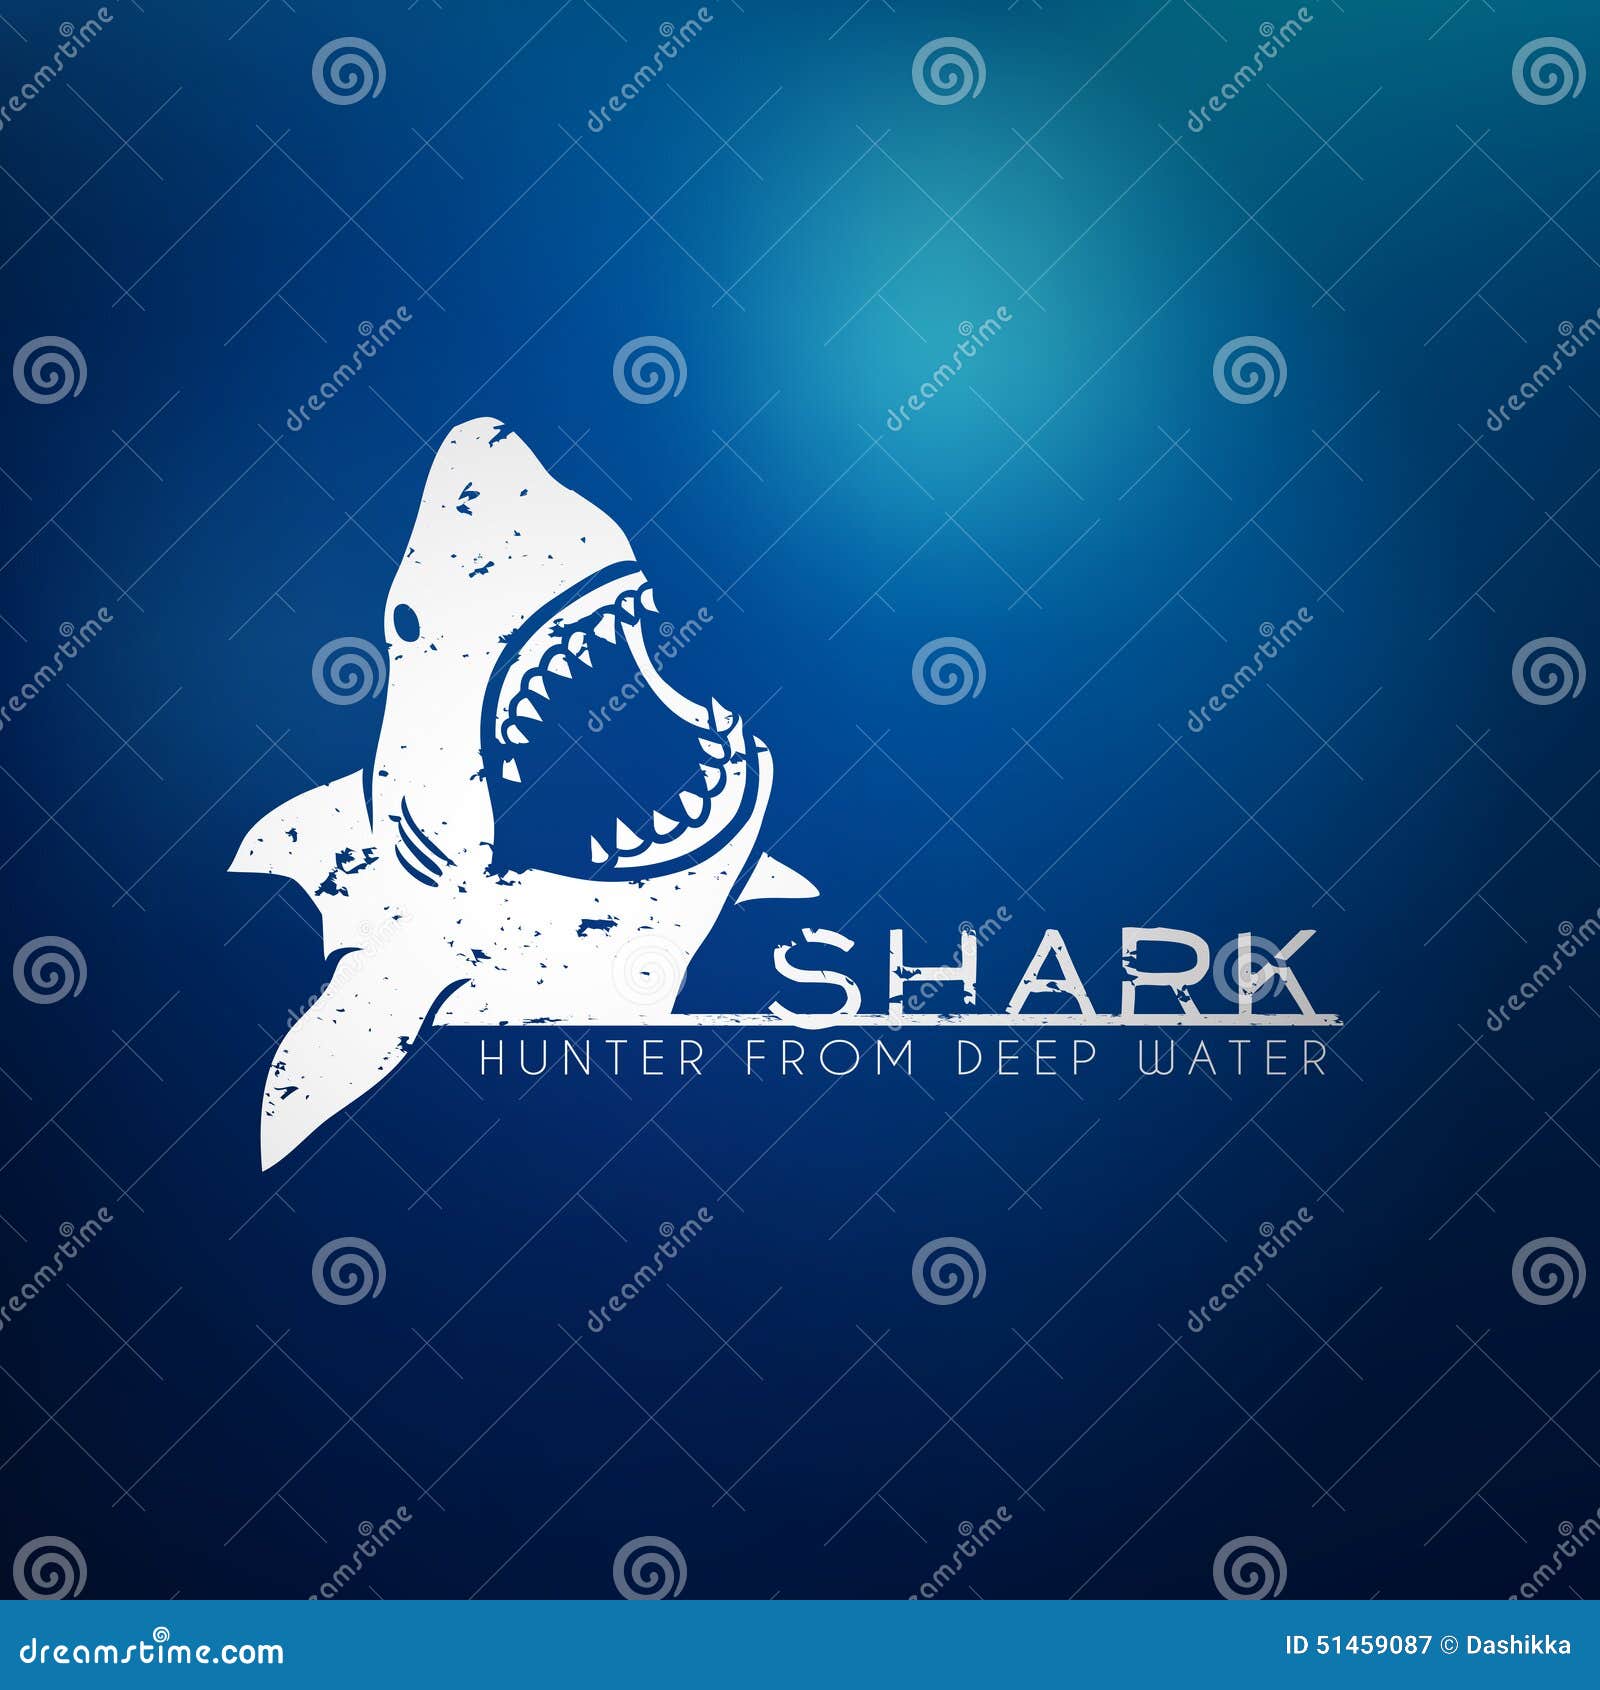 shark concept